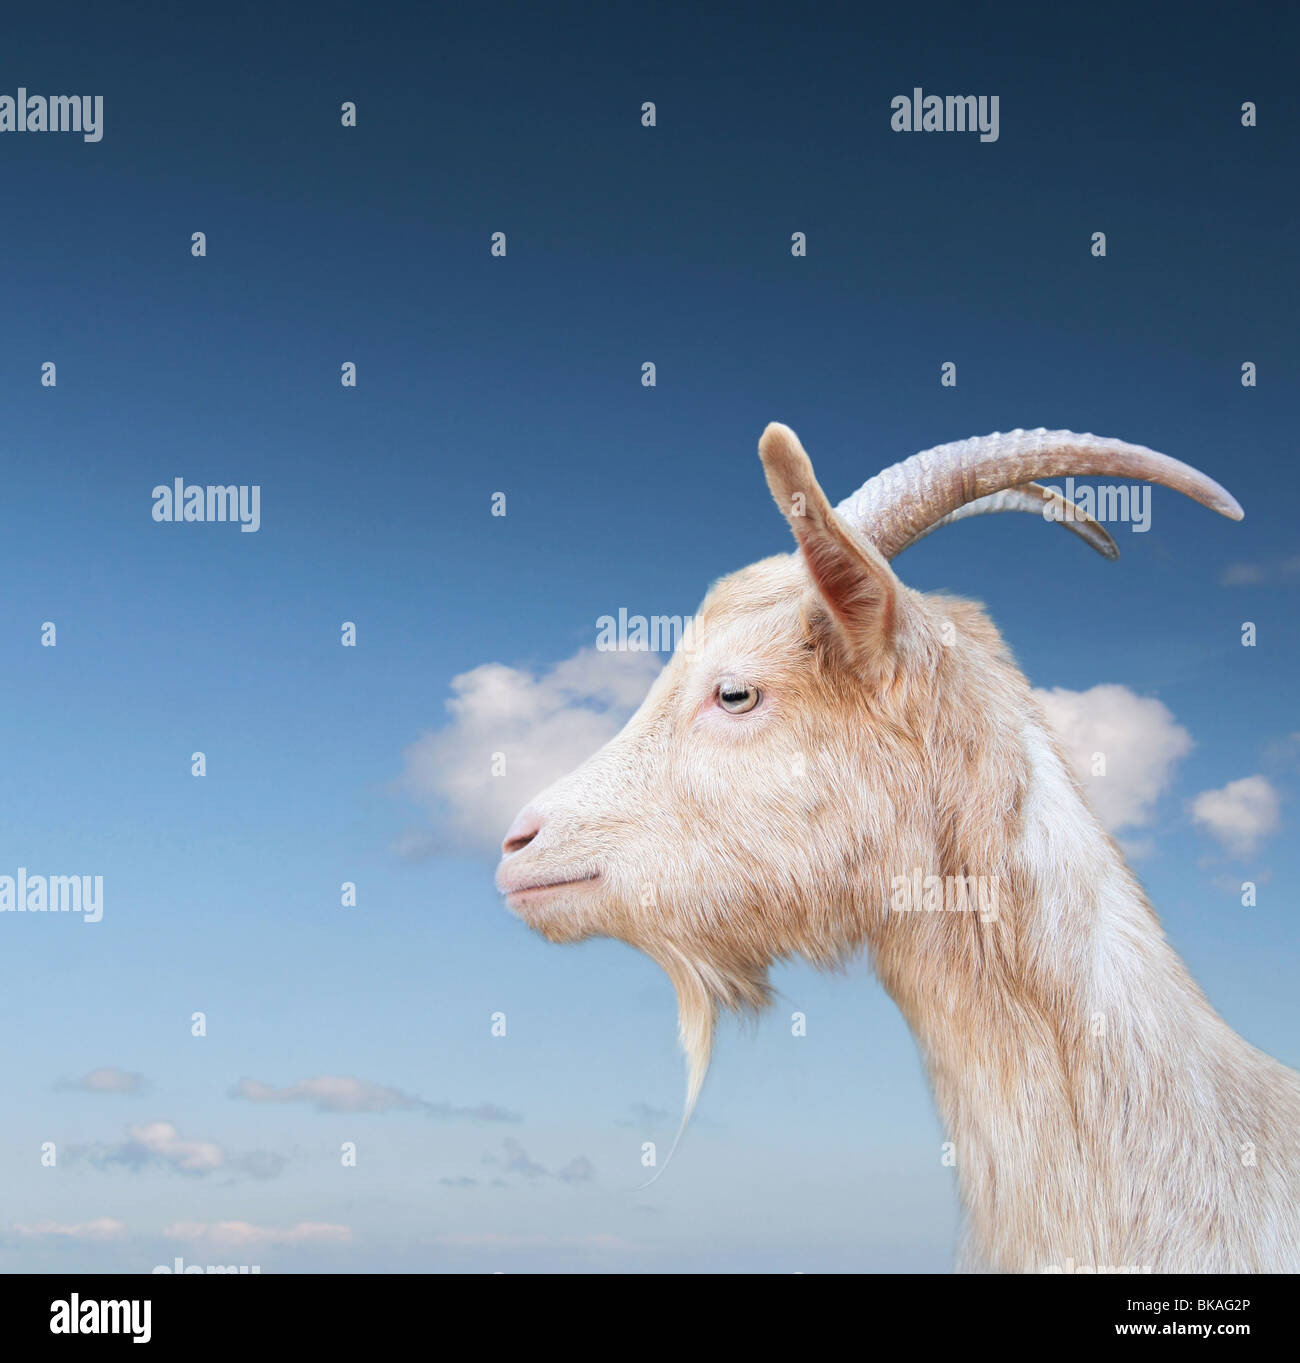 Weiße Ziege auf einem blauen Himmel Stockfoto